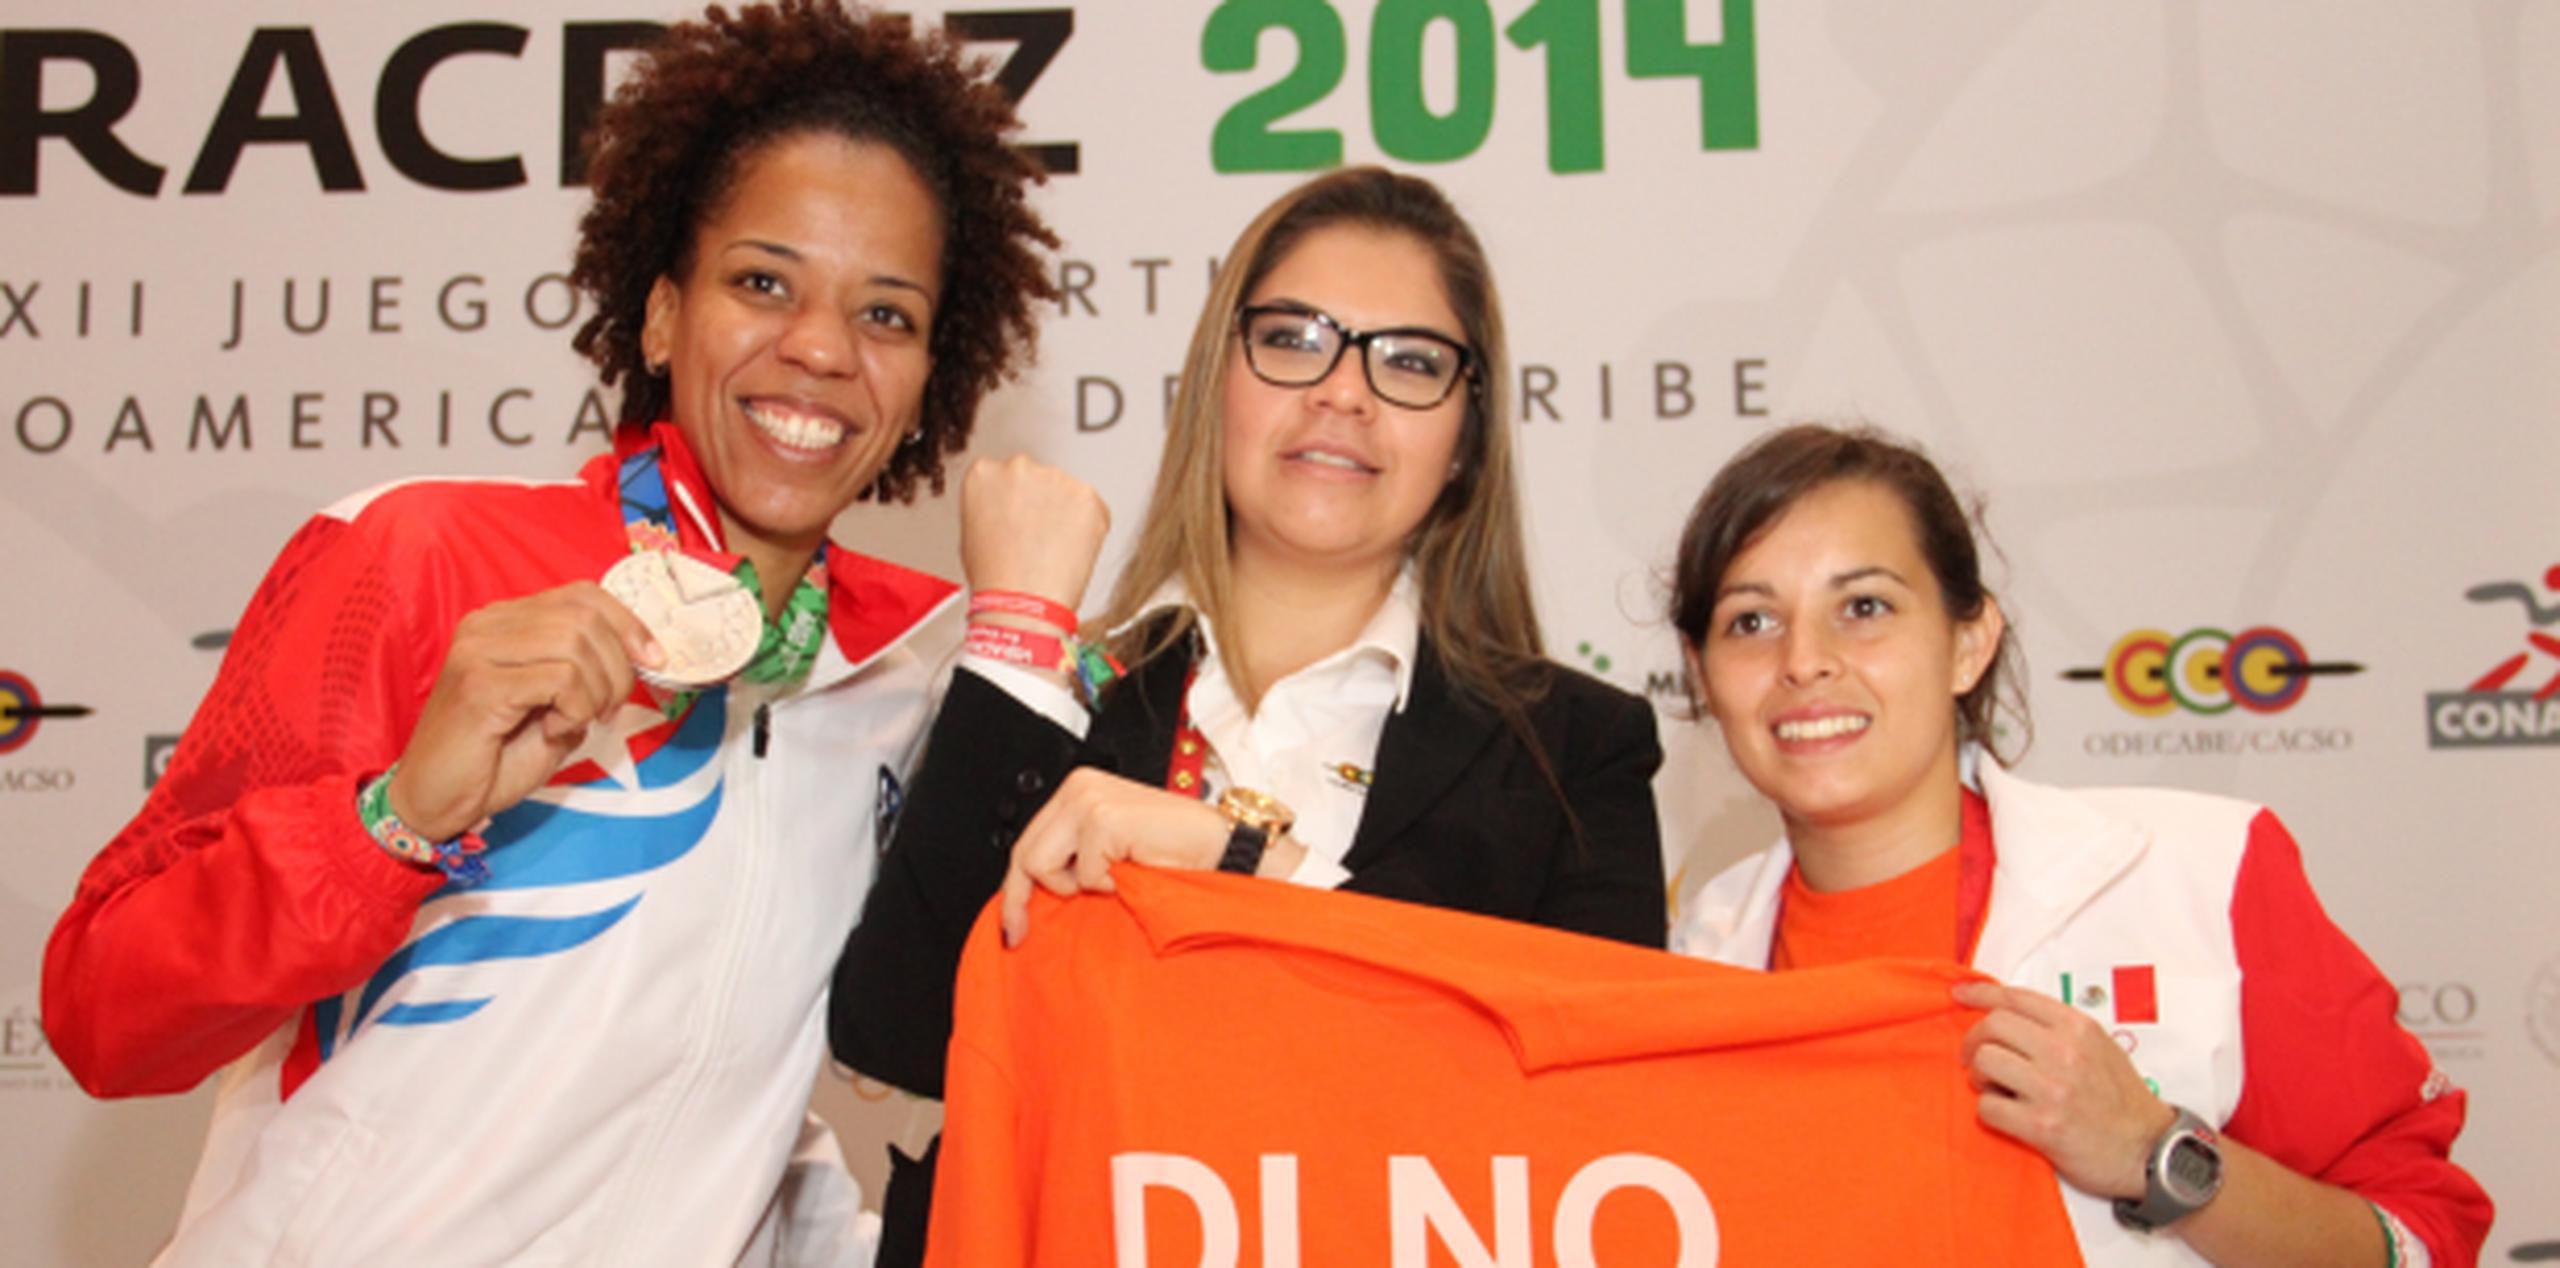 La integrante de la Selección de baloncesto femenino boricua Mari Plácido (izq.) se unió a la jugadora de squash mexicana Karla Urrutía en apoyo a la iniciativa. (Suministrada)